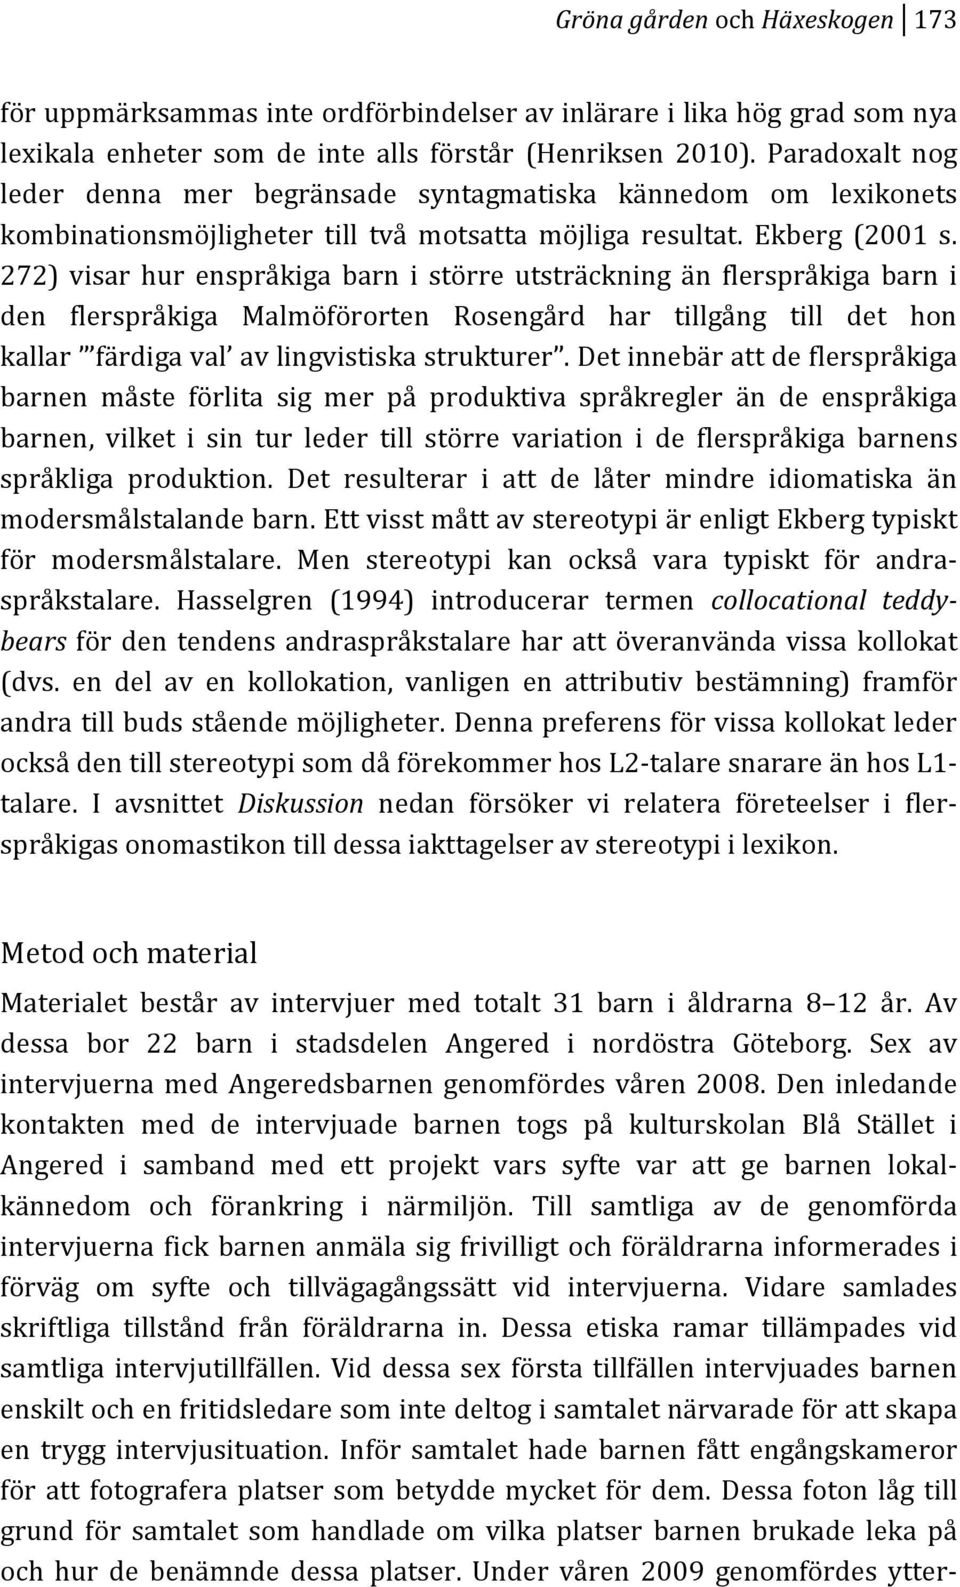 272) visar hur enspråkiga barn i större utsträckning än flerspråkiga barn i den flerspråkiga Malmöförorten Rosengård har tillgång till det hon kallar färdigaval avlingvistiskastrukturer.